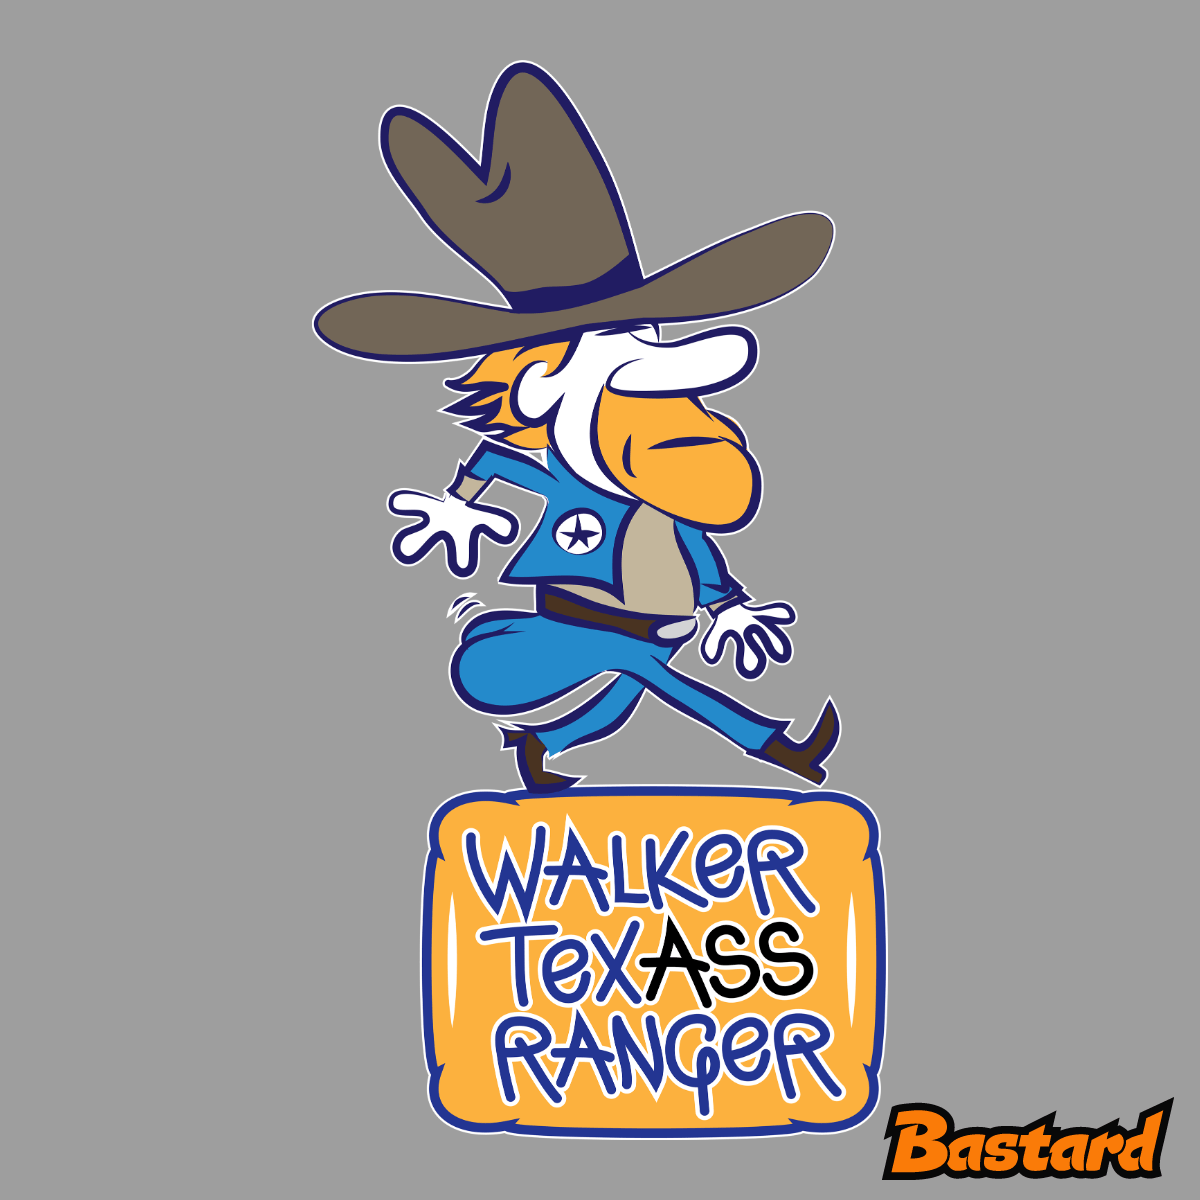 Walker Texass Ranger